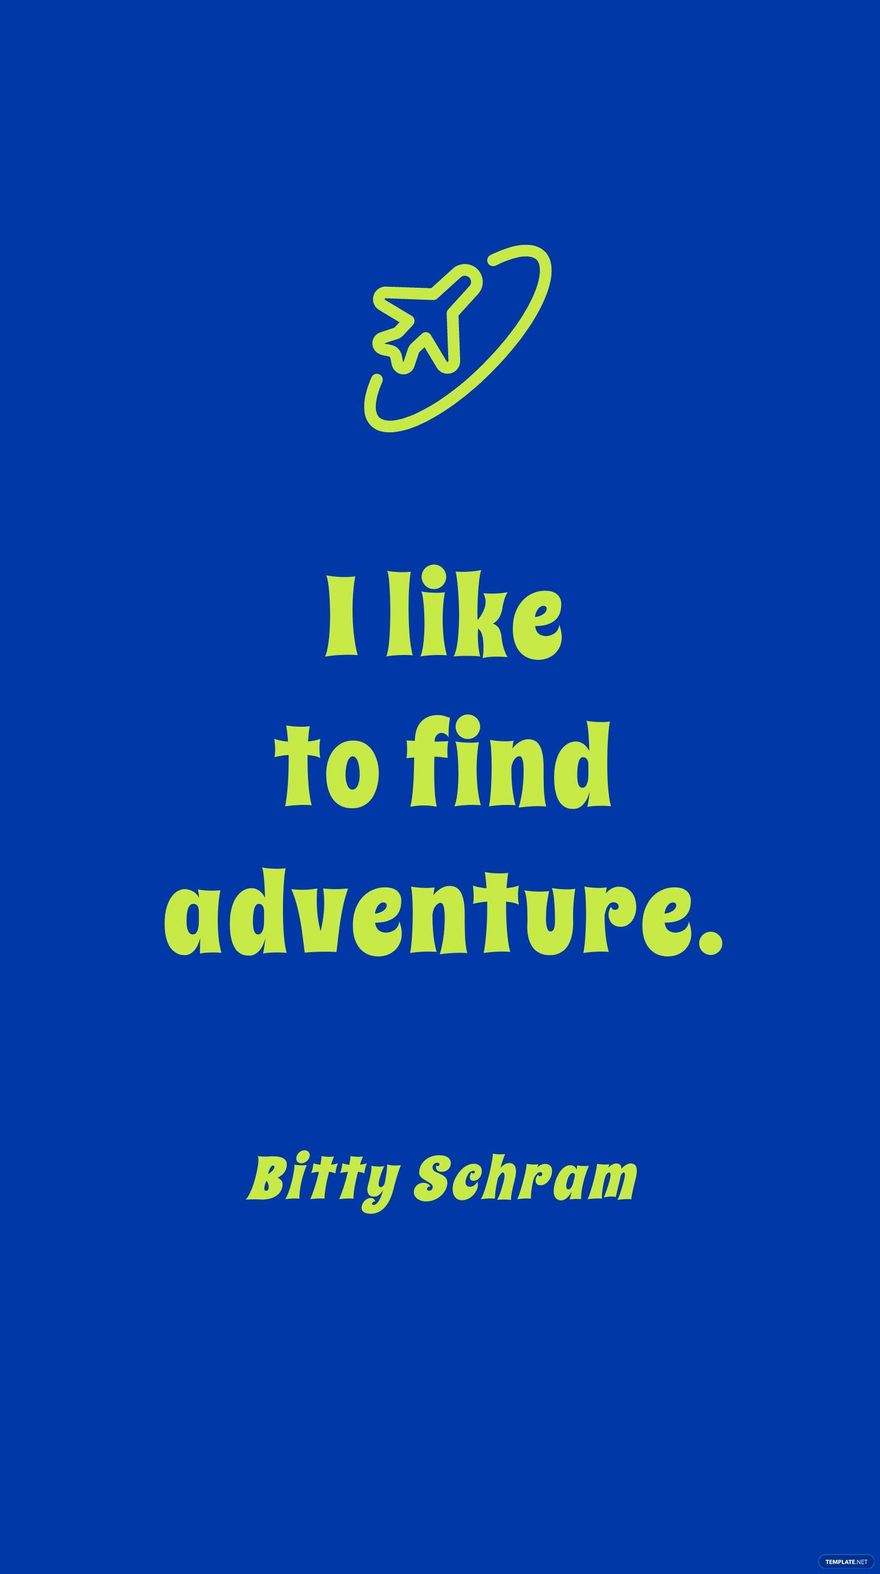 Free Bitty Schram - I like to find adventure. in JPG